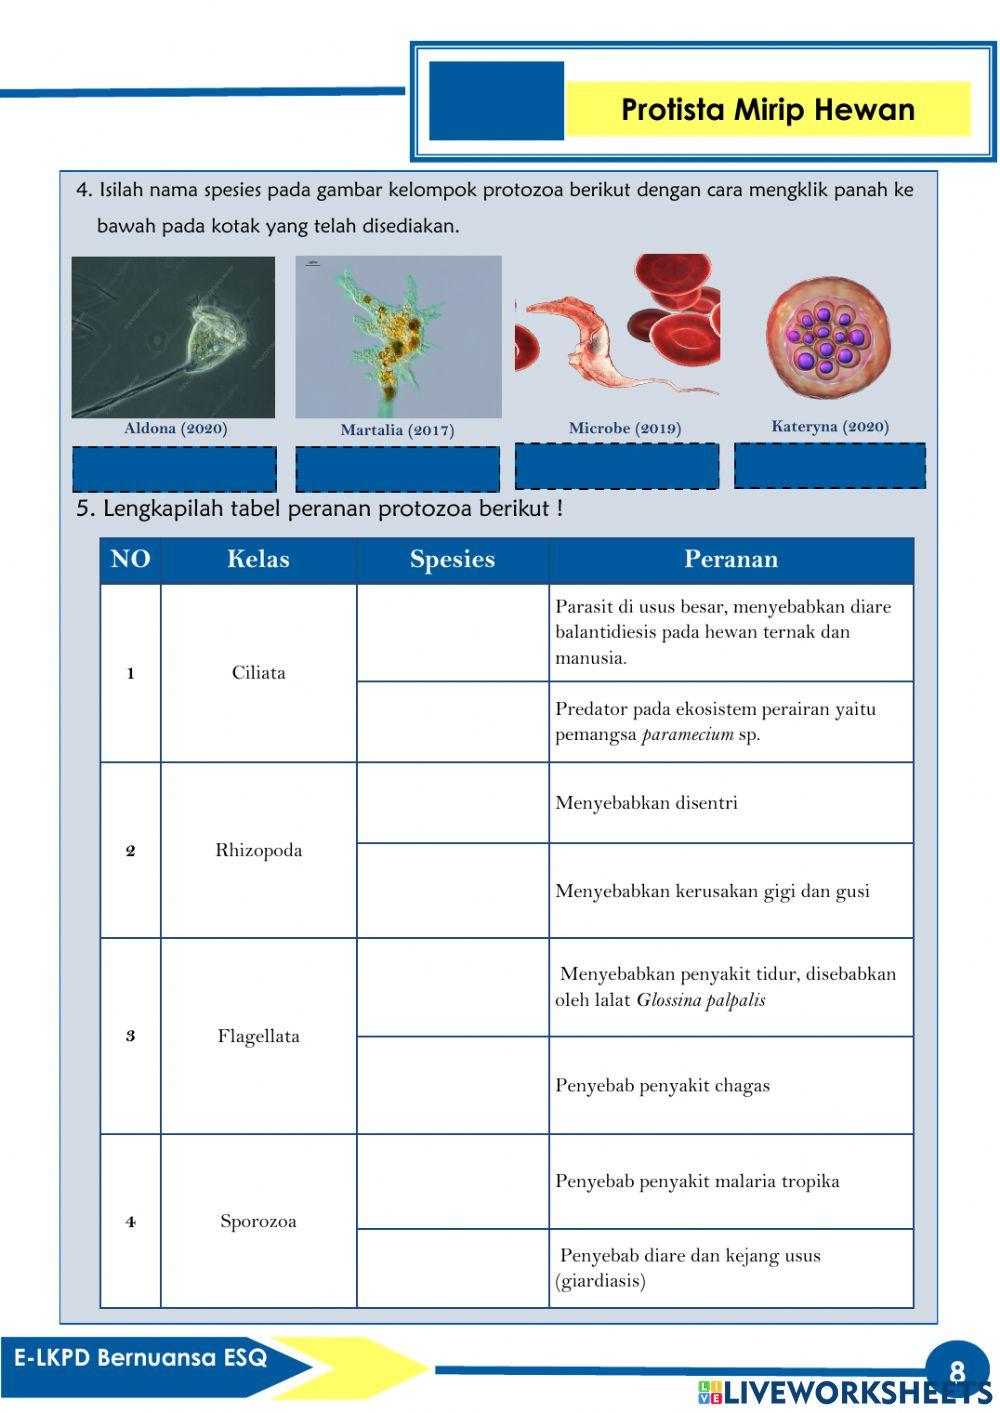 Pengembangan E-LKPD Bernuansa ESQ Pada Materi Protista (Protozoa)